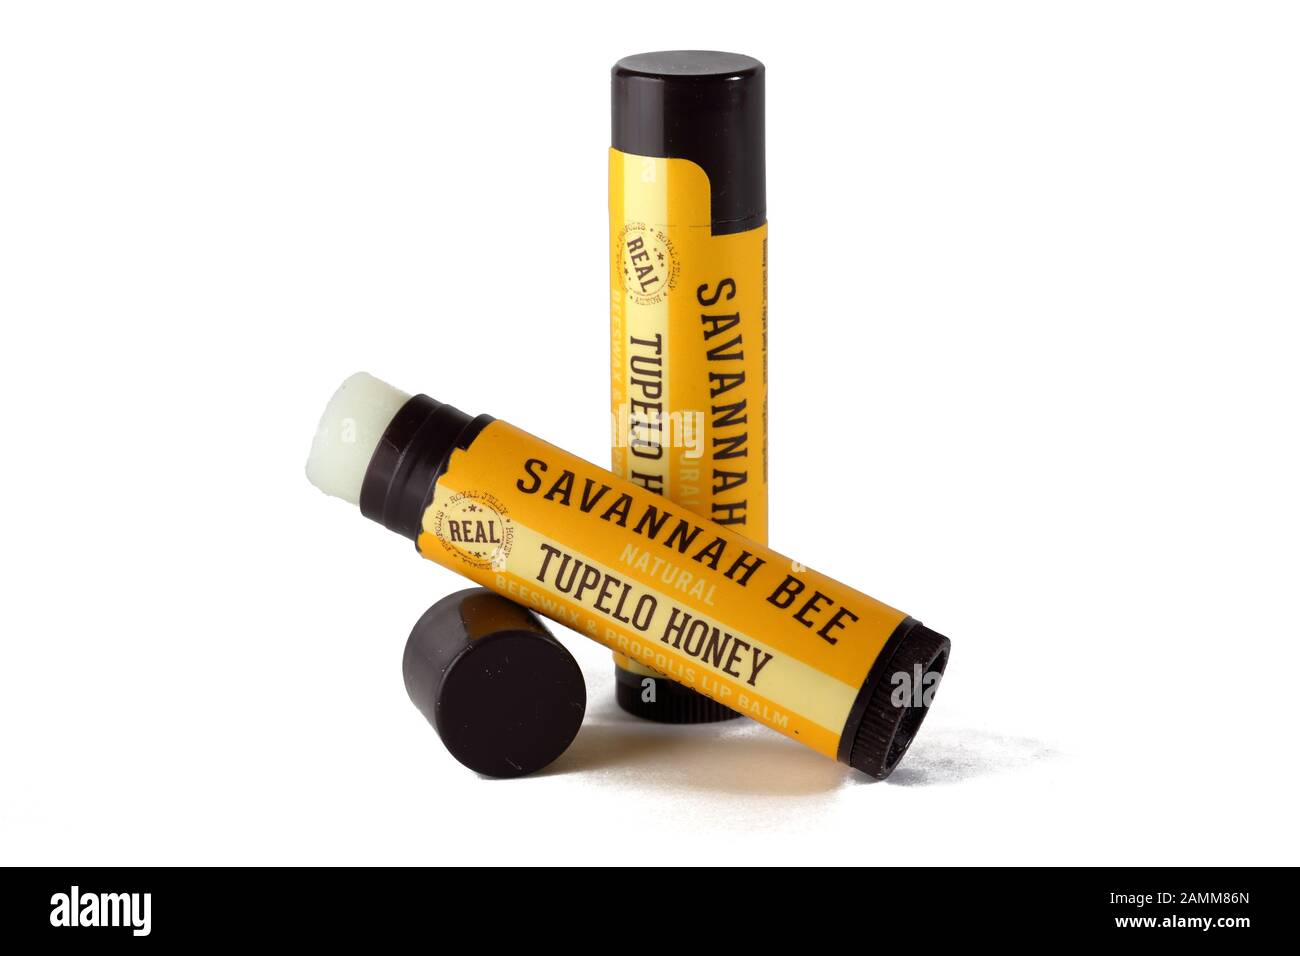 Zwei Sticks von Savannah Bee Marke Tupelo Honig Lippenbalsam isoliert auf einem weißen Hintergrund. Ausschnitt Bild für Illustration und redaktionelle Verwendung. Stockfoto